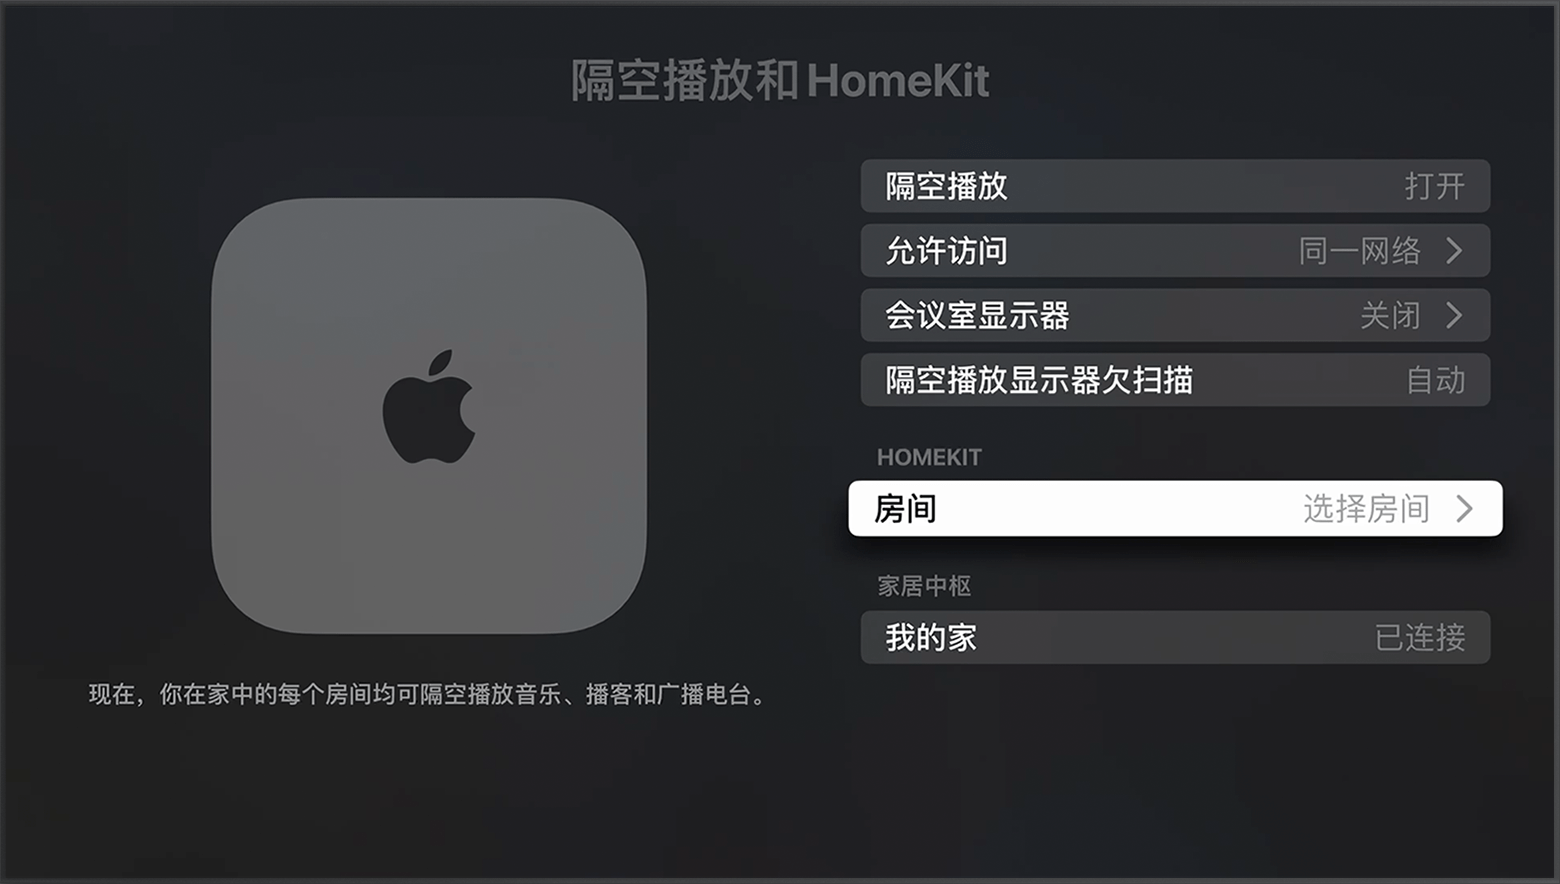 在 Apple TV 设置中的“隔空播放和 HomeKit”屏幕上，“HomeKit”下方显示了“房间”